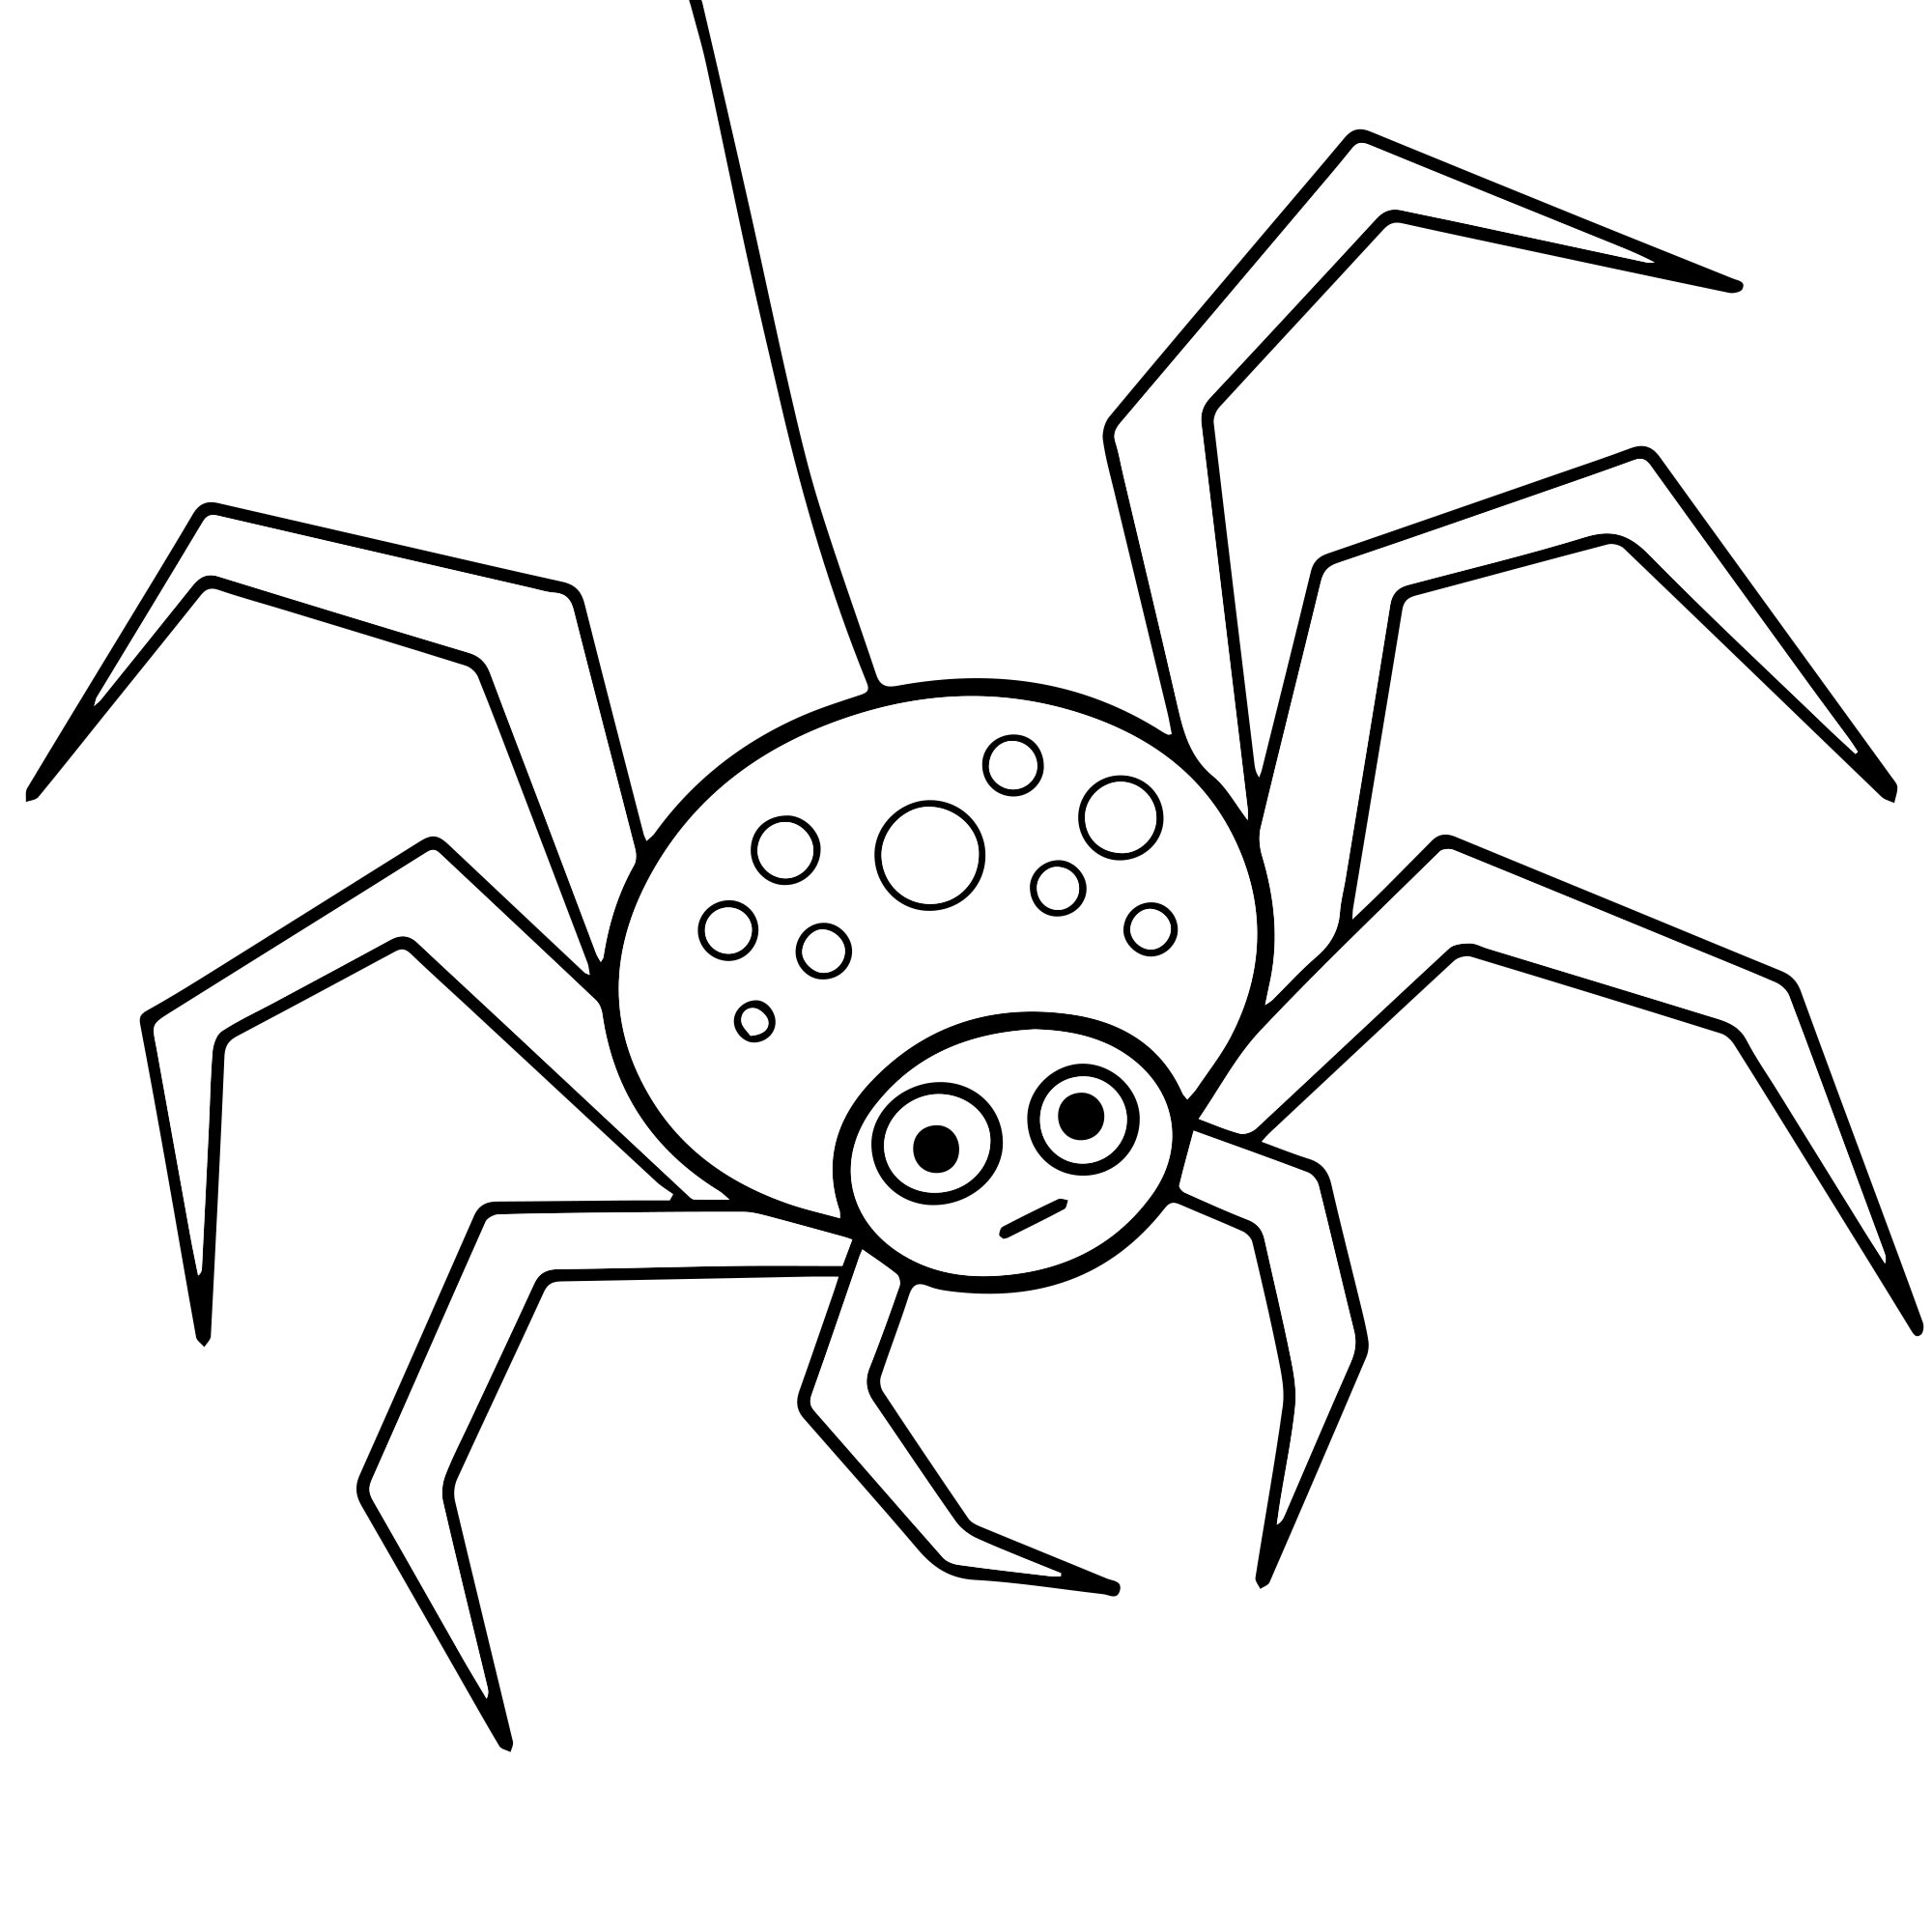 Раскрашивание рисунков пауков для детей